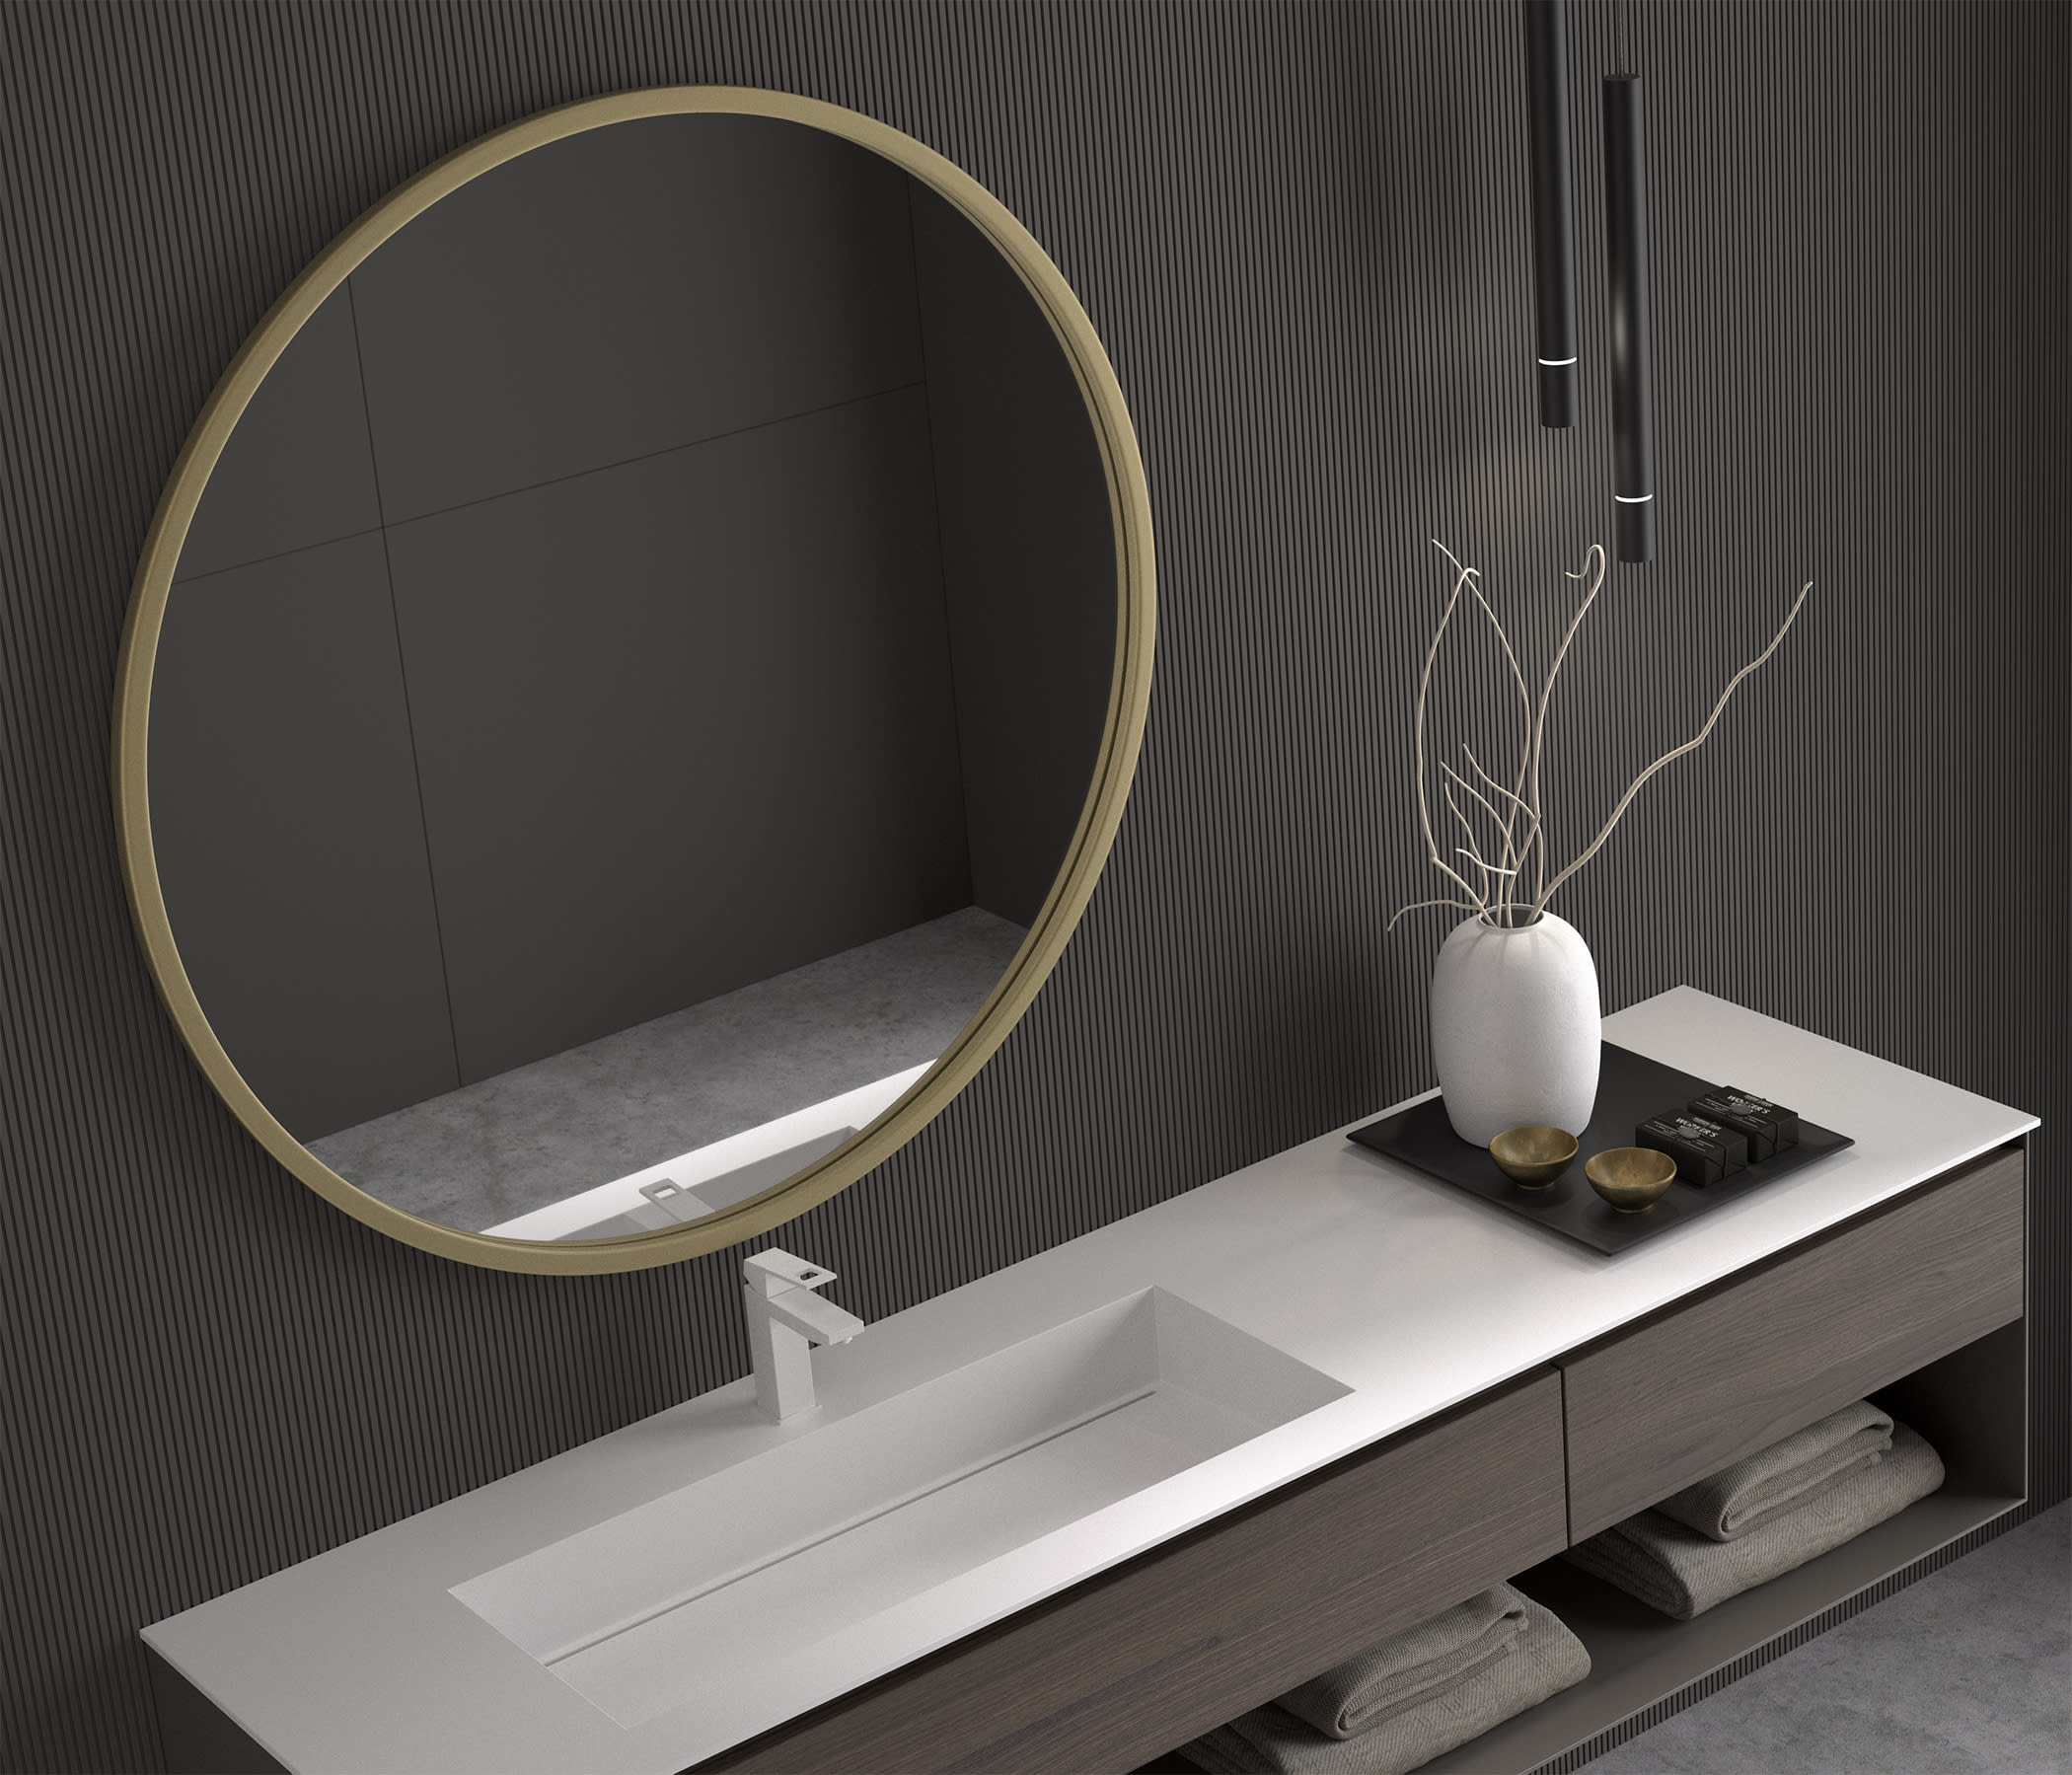 Comprar espejos de baño negros - ¡Nuevos y exclusivos!